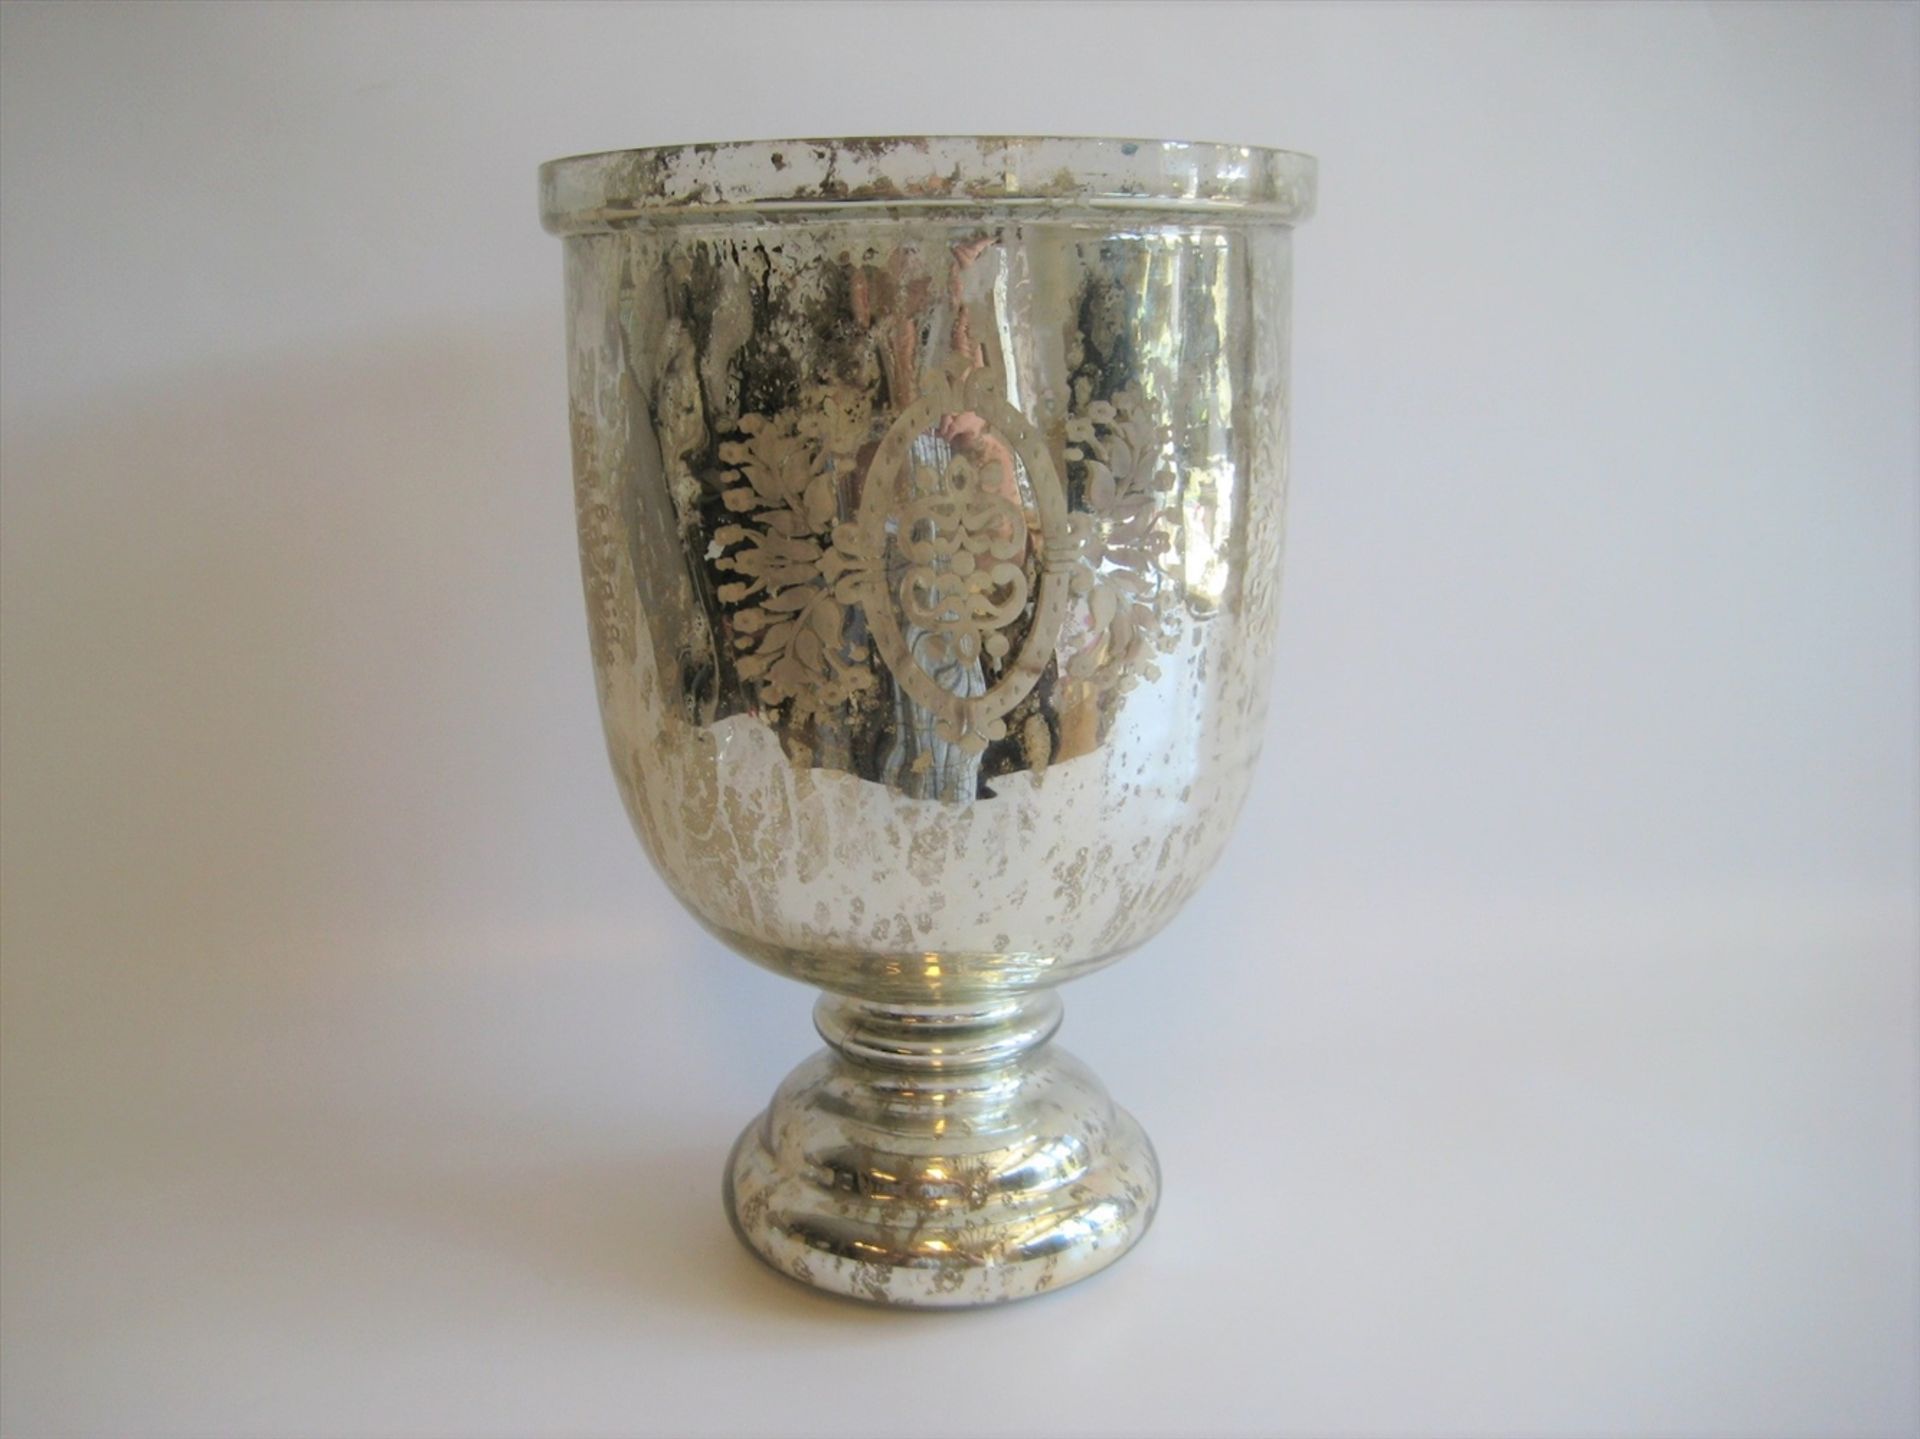 Bauernsilber Vase, florales Ätzdekor, h 28,5 cm, d 19 cm.- - -19.00 % buyer's premium on the